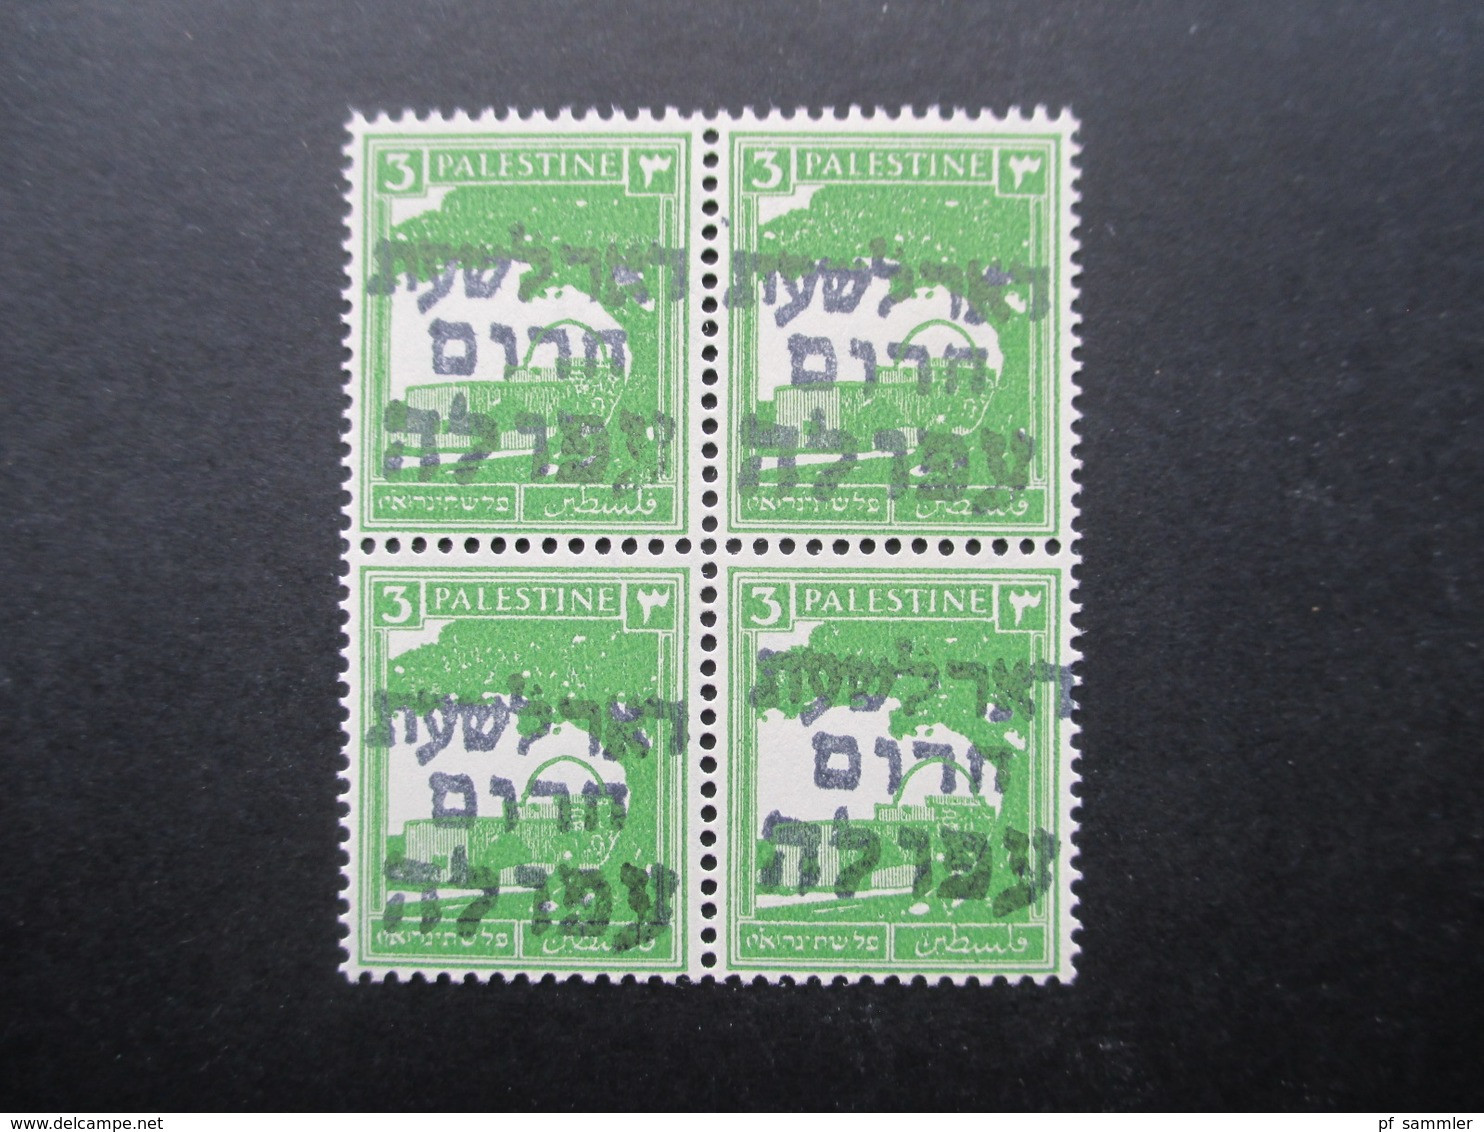 Palestina / Israel 1948 Interimspost ** / Postfrischer 4er Block Aufdruck Afula Emergency Post / Emergency Mail - Palestine